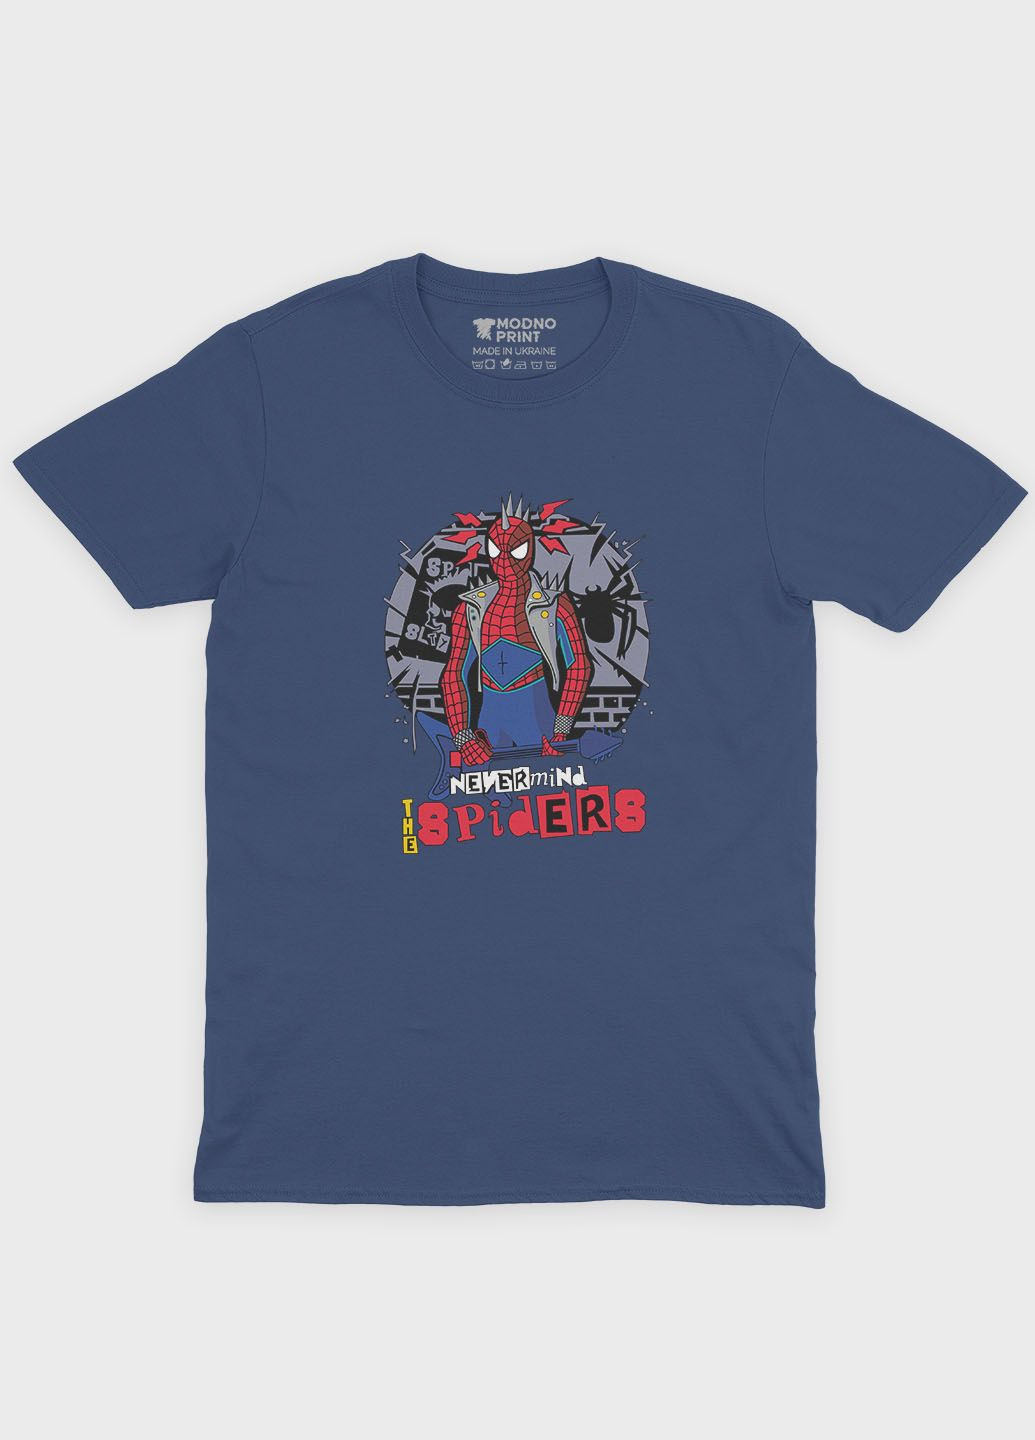 Темно-синяя демисезонная футболка для девочки с принтом супергероя - человек-паук (ts001-1-nav-006-014-054-g) Modno